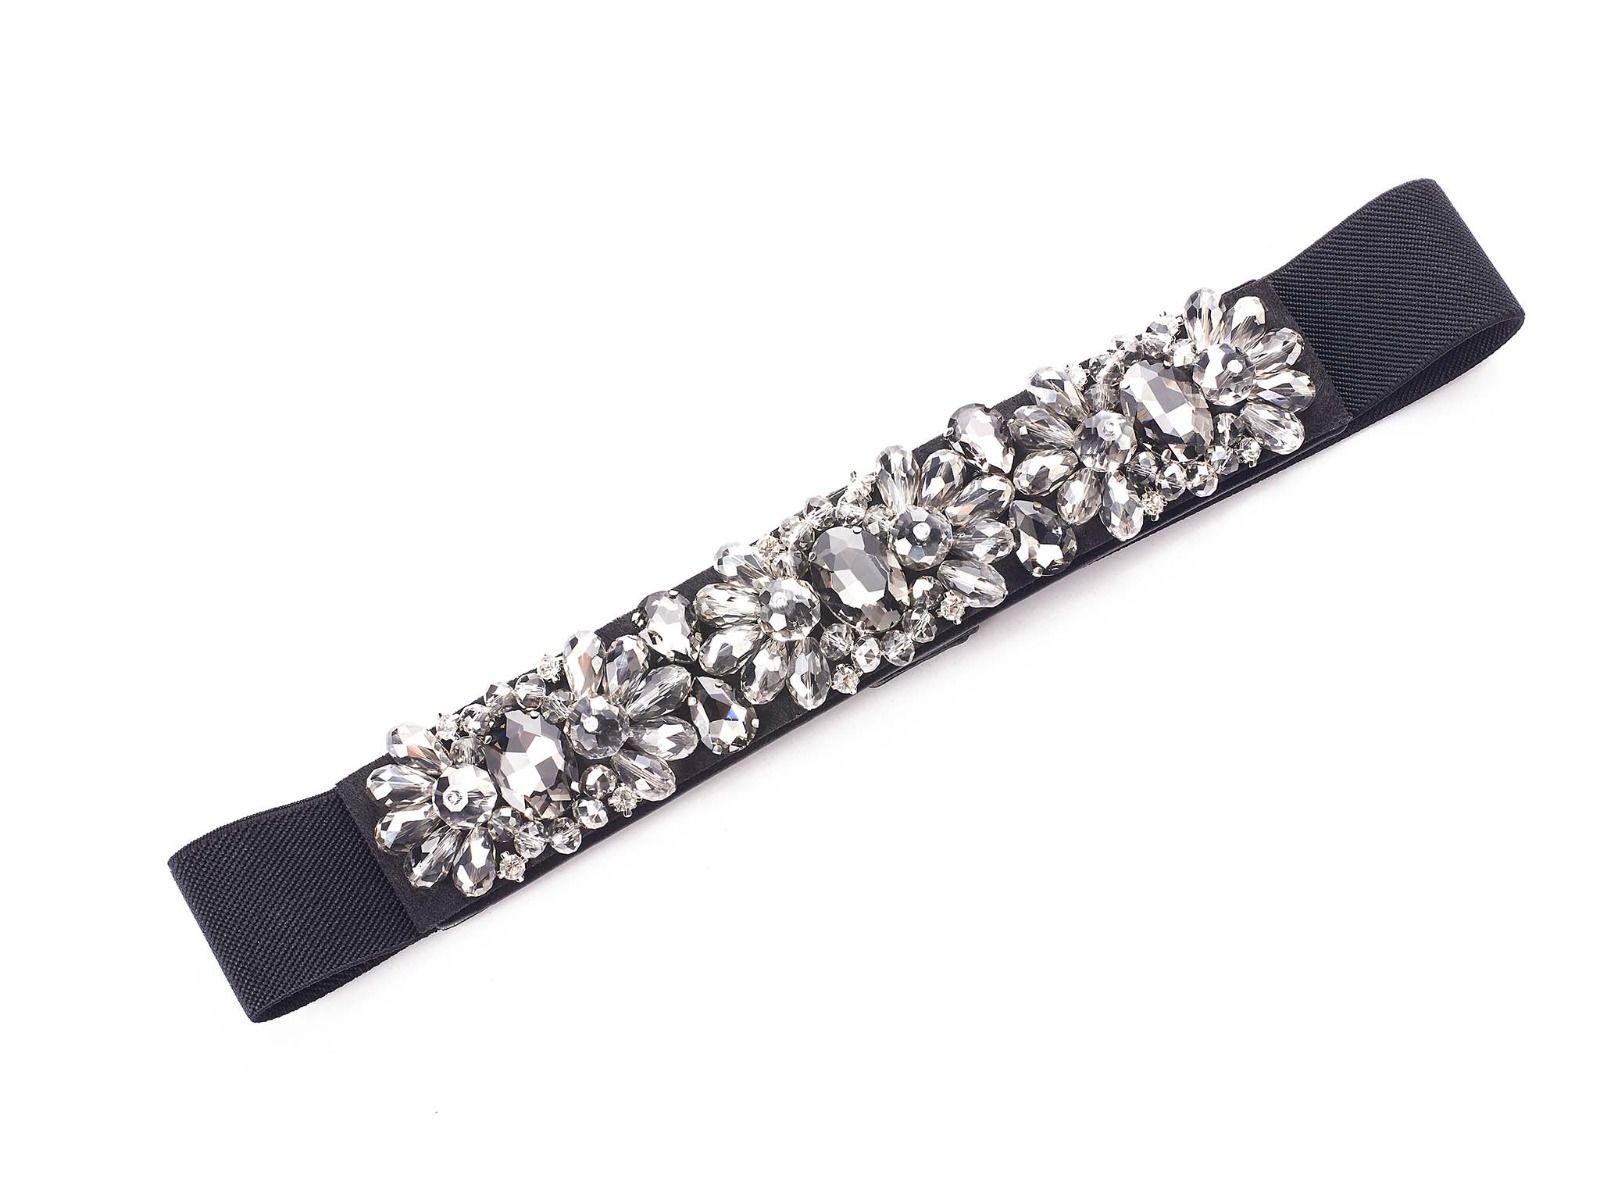 Embellished Gems belt